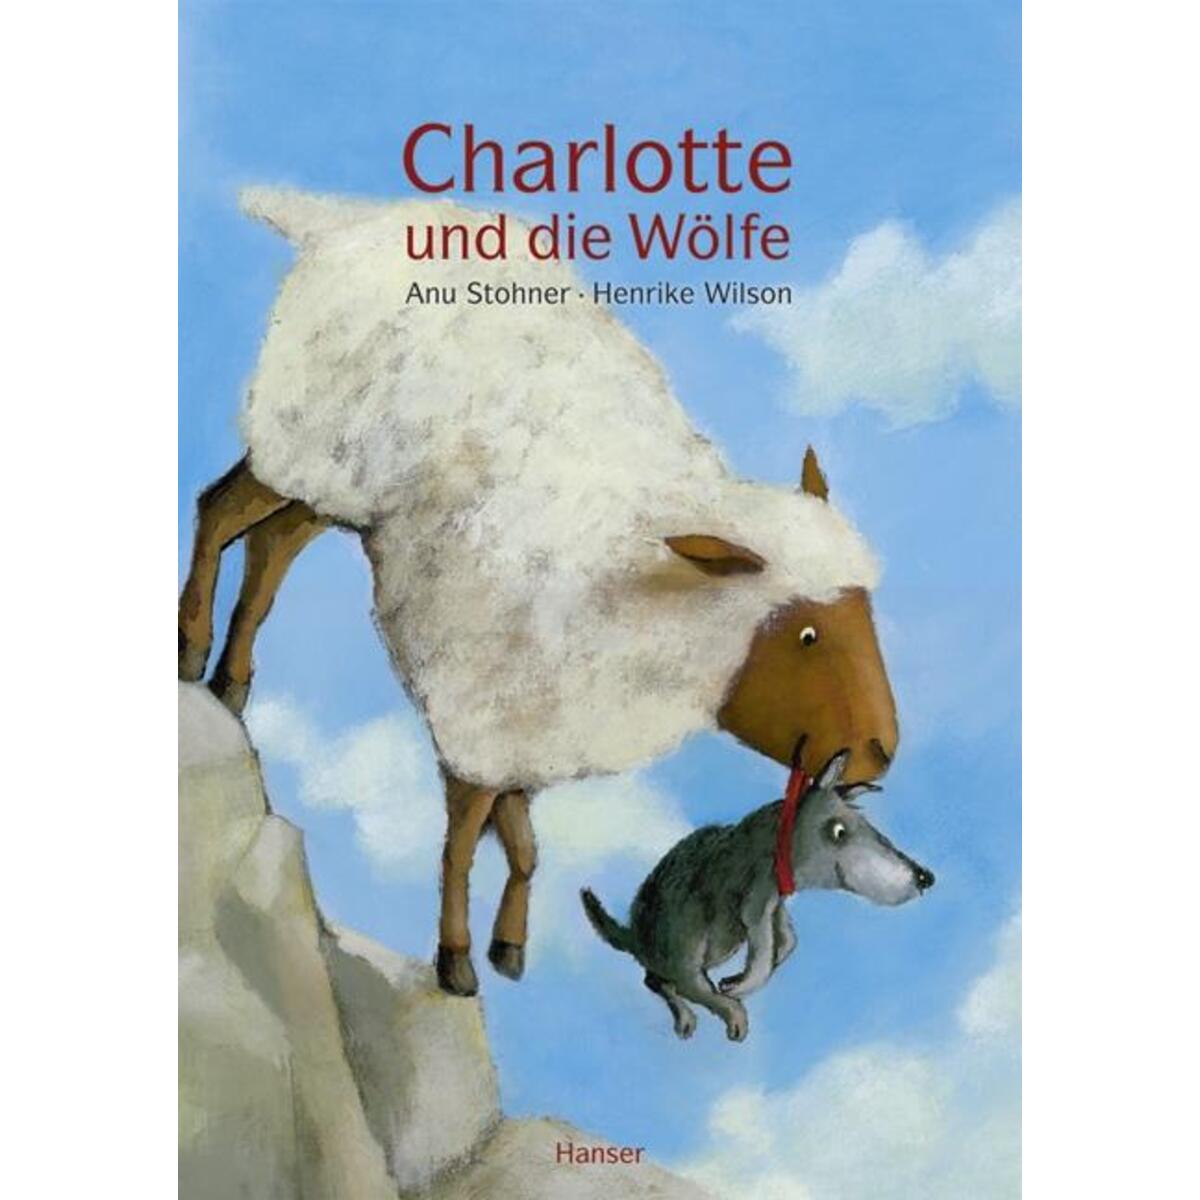 Charlotte und die Wölfe von Carl Hanser Verlag